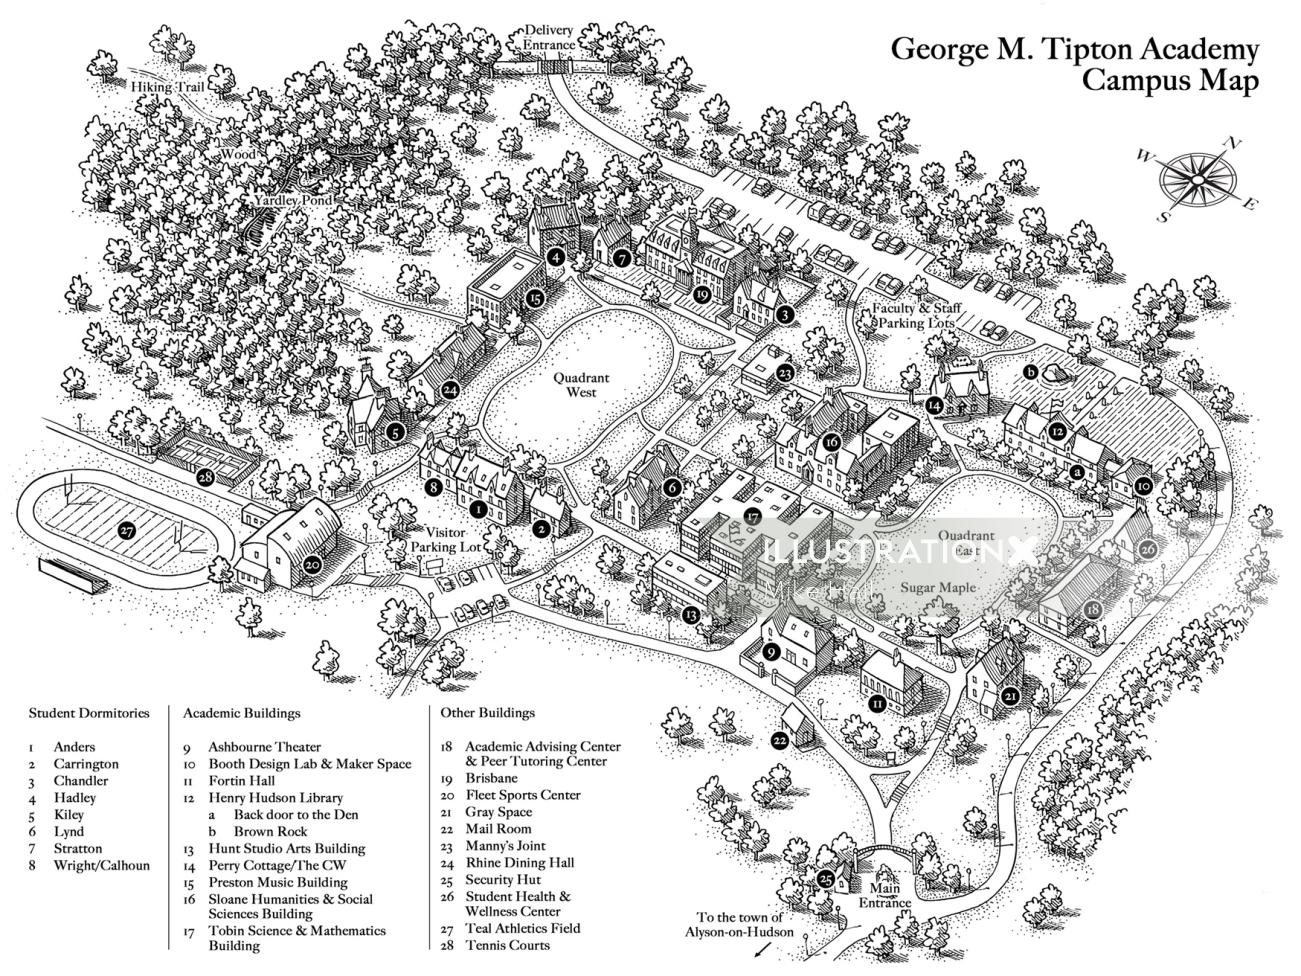 ジョージ M. ティプトン アカデミーの白黒キャンパス マップ